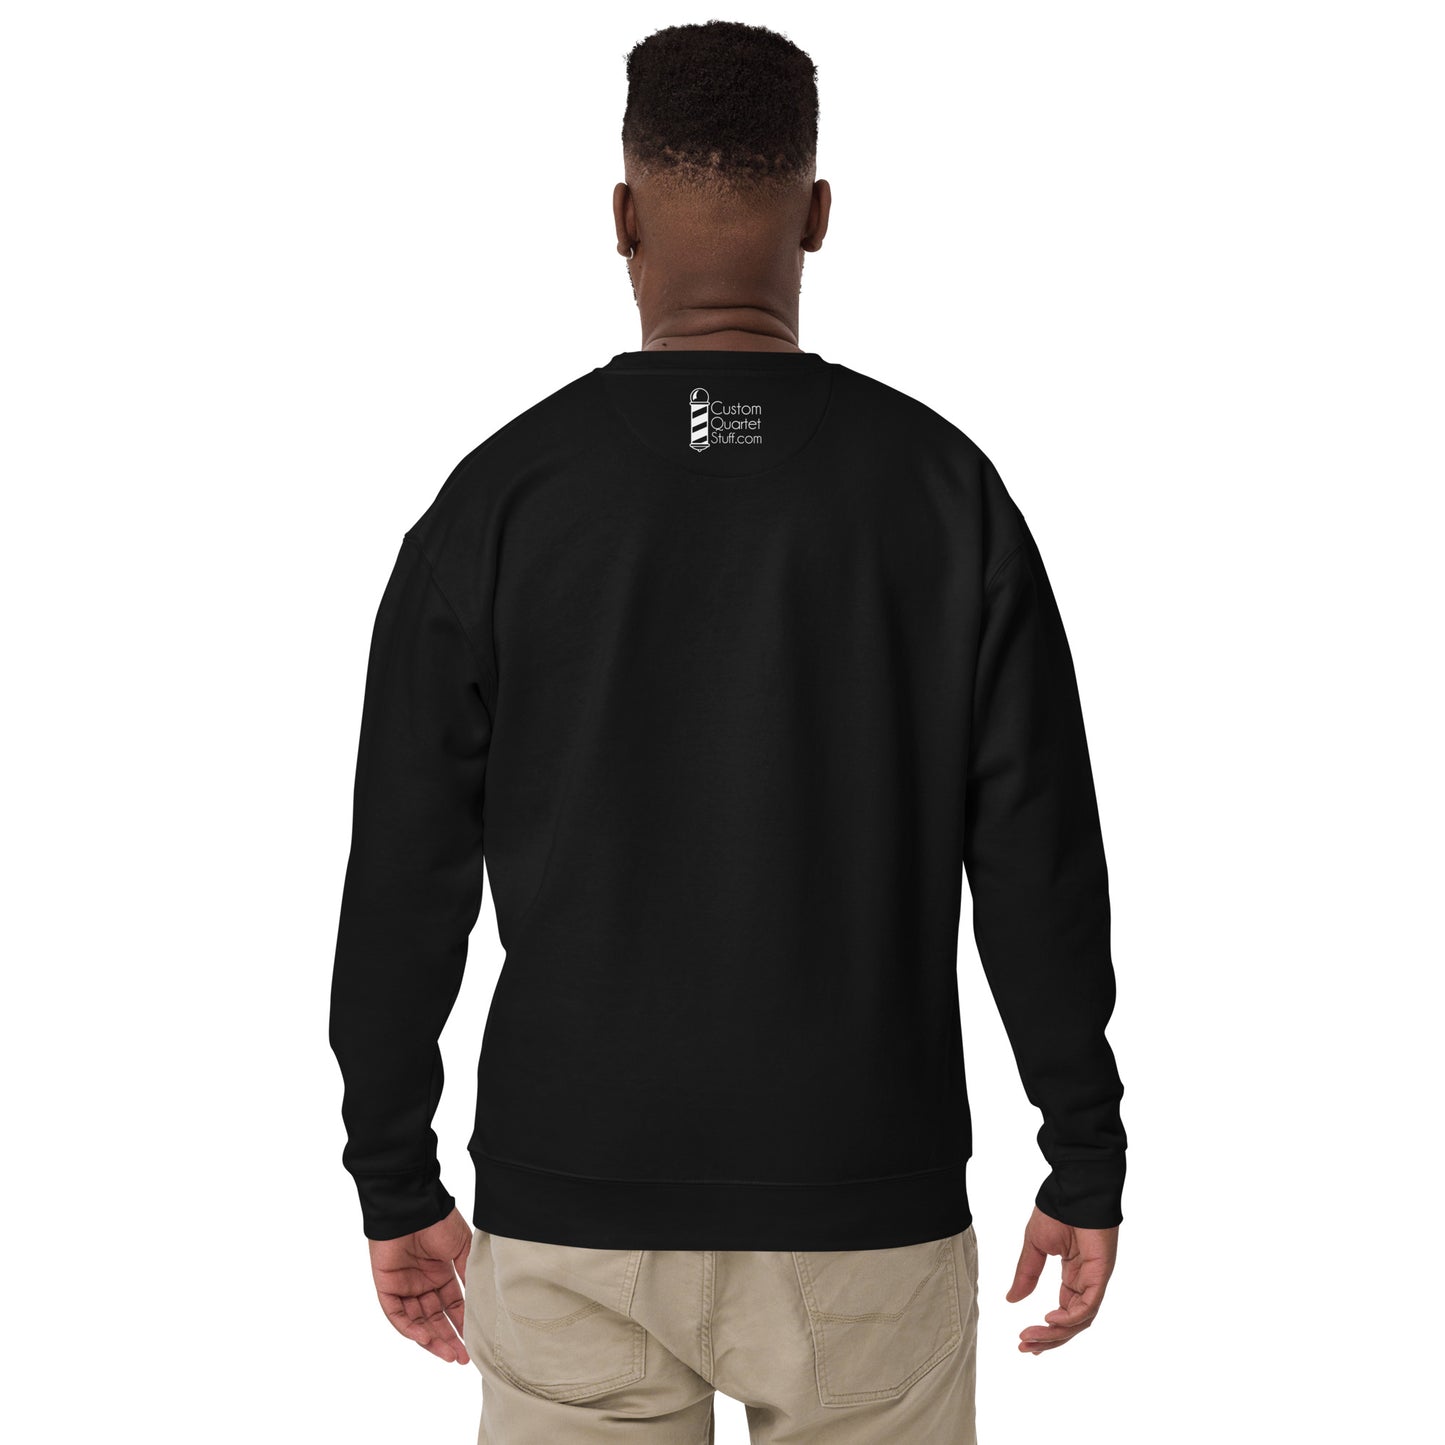 Clover - Printed Unisex Premium Sweatshirt